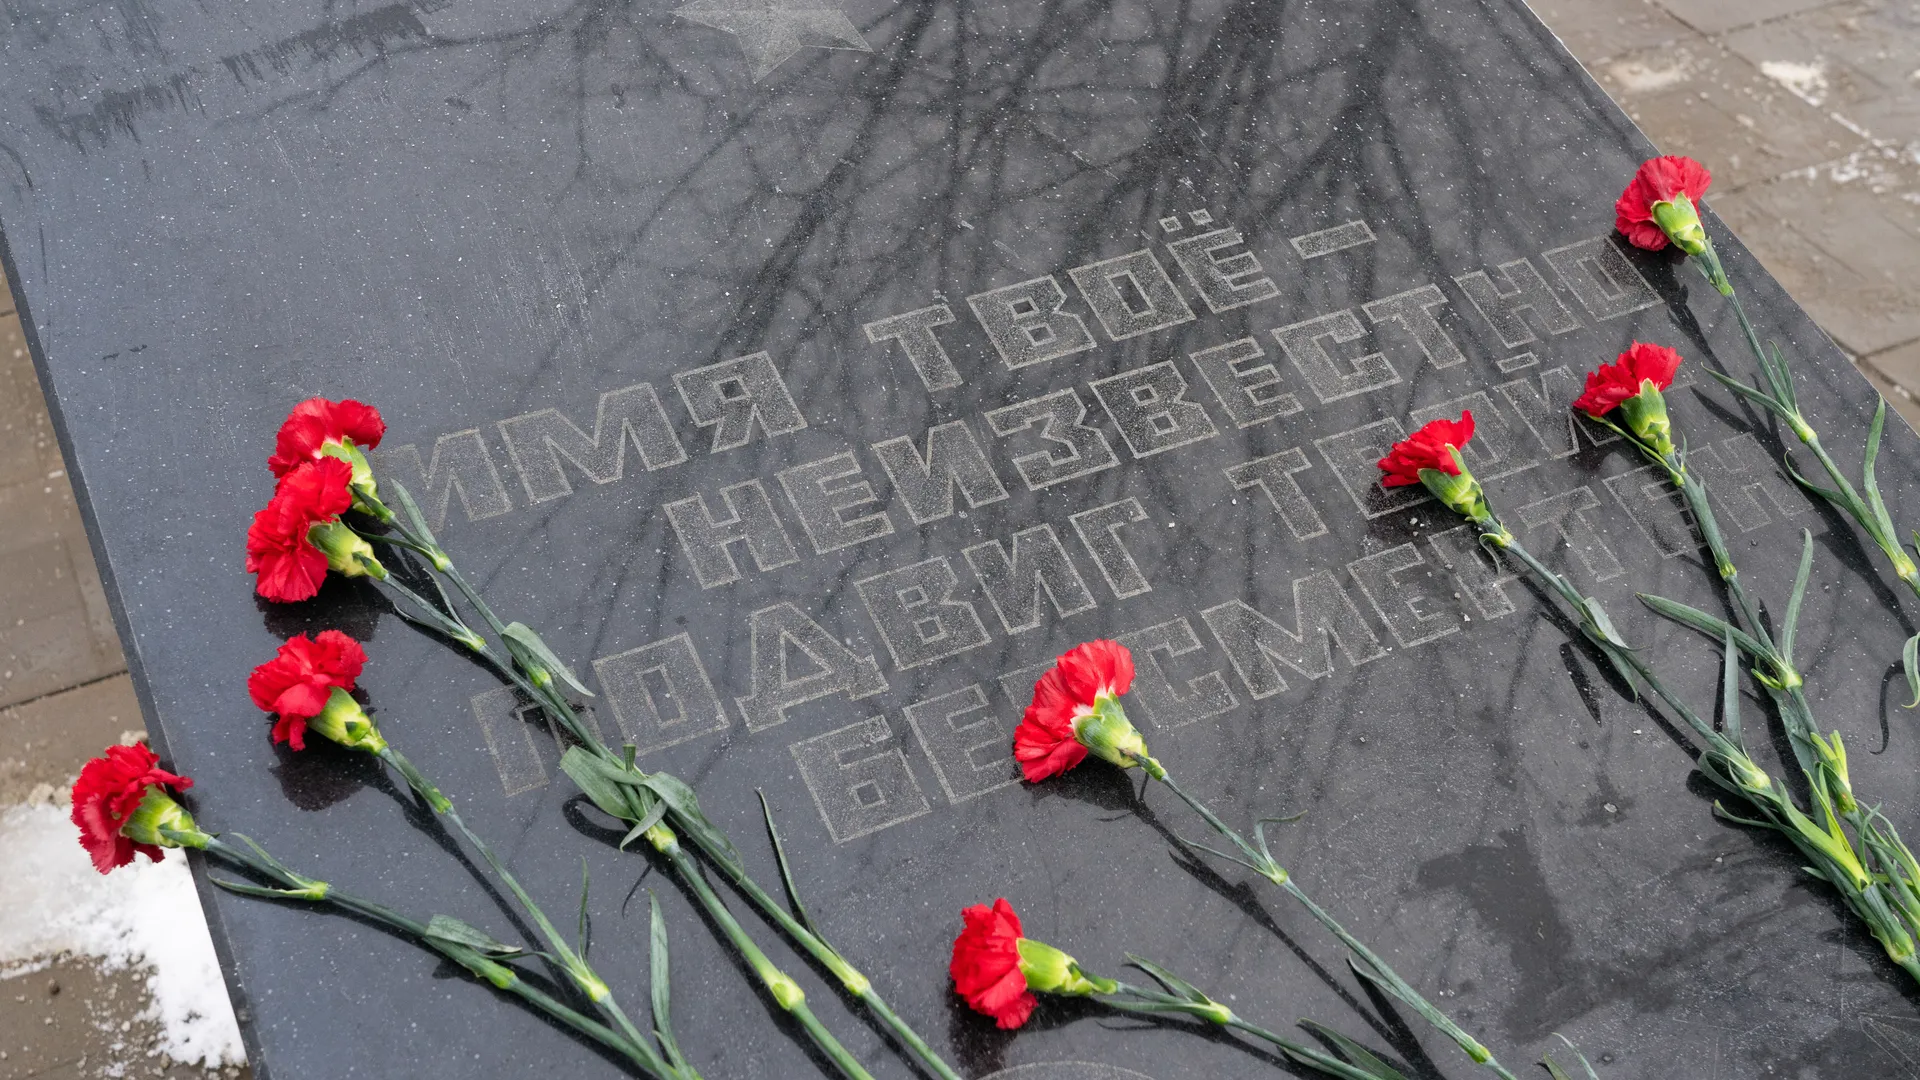 Политолог Соловейчик связал перенос «Бессмертного полка» с диверсиями Украины